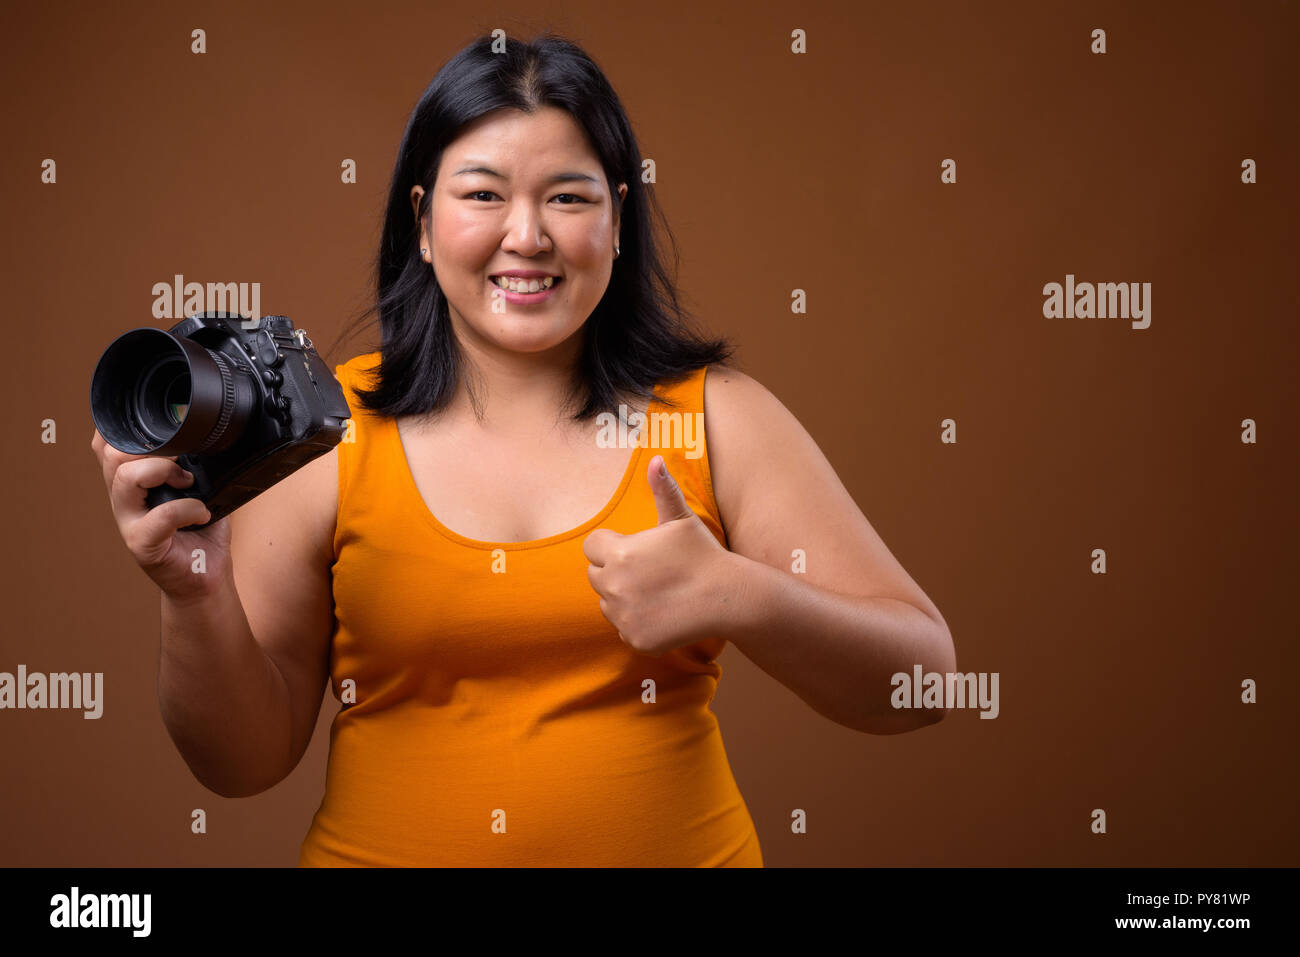 Bellissimo il sovrappeso donna asiatica fotografo sorridente e dando pollice in alto Foto Stock